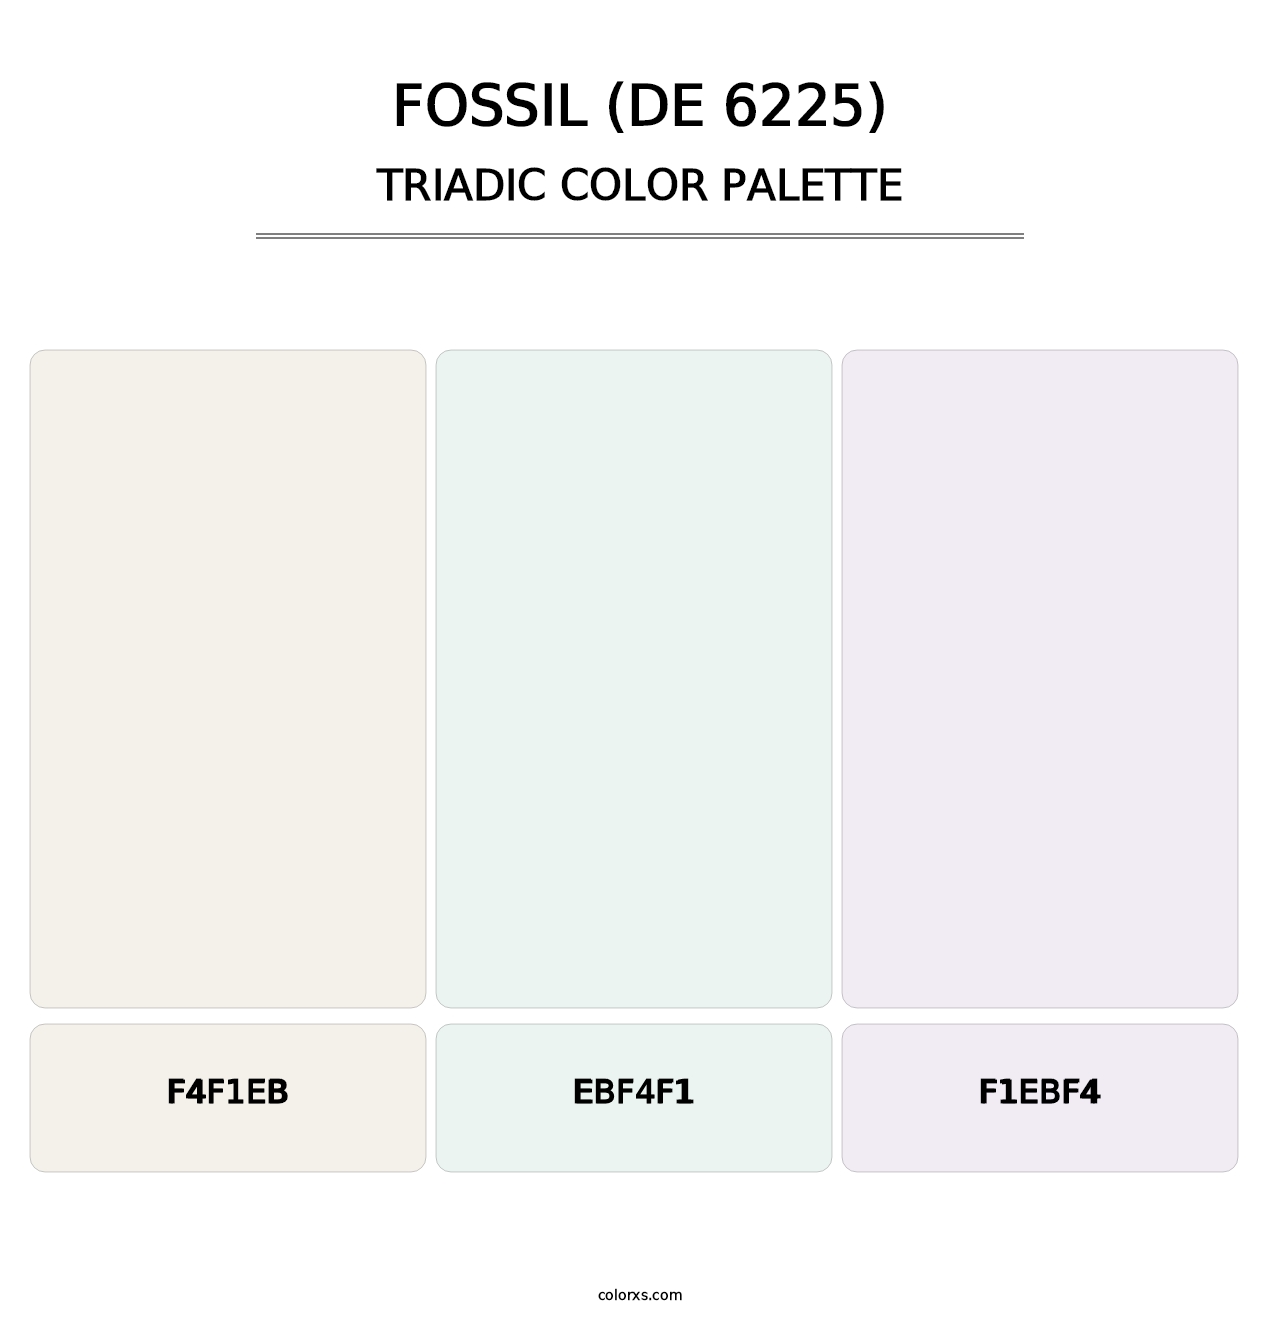 Fossil (DE 6225) - Triadic Color Palette